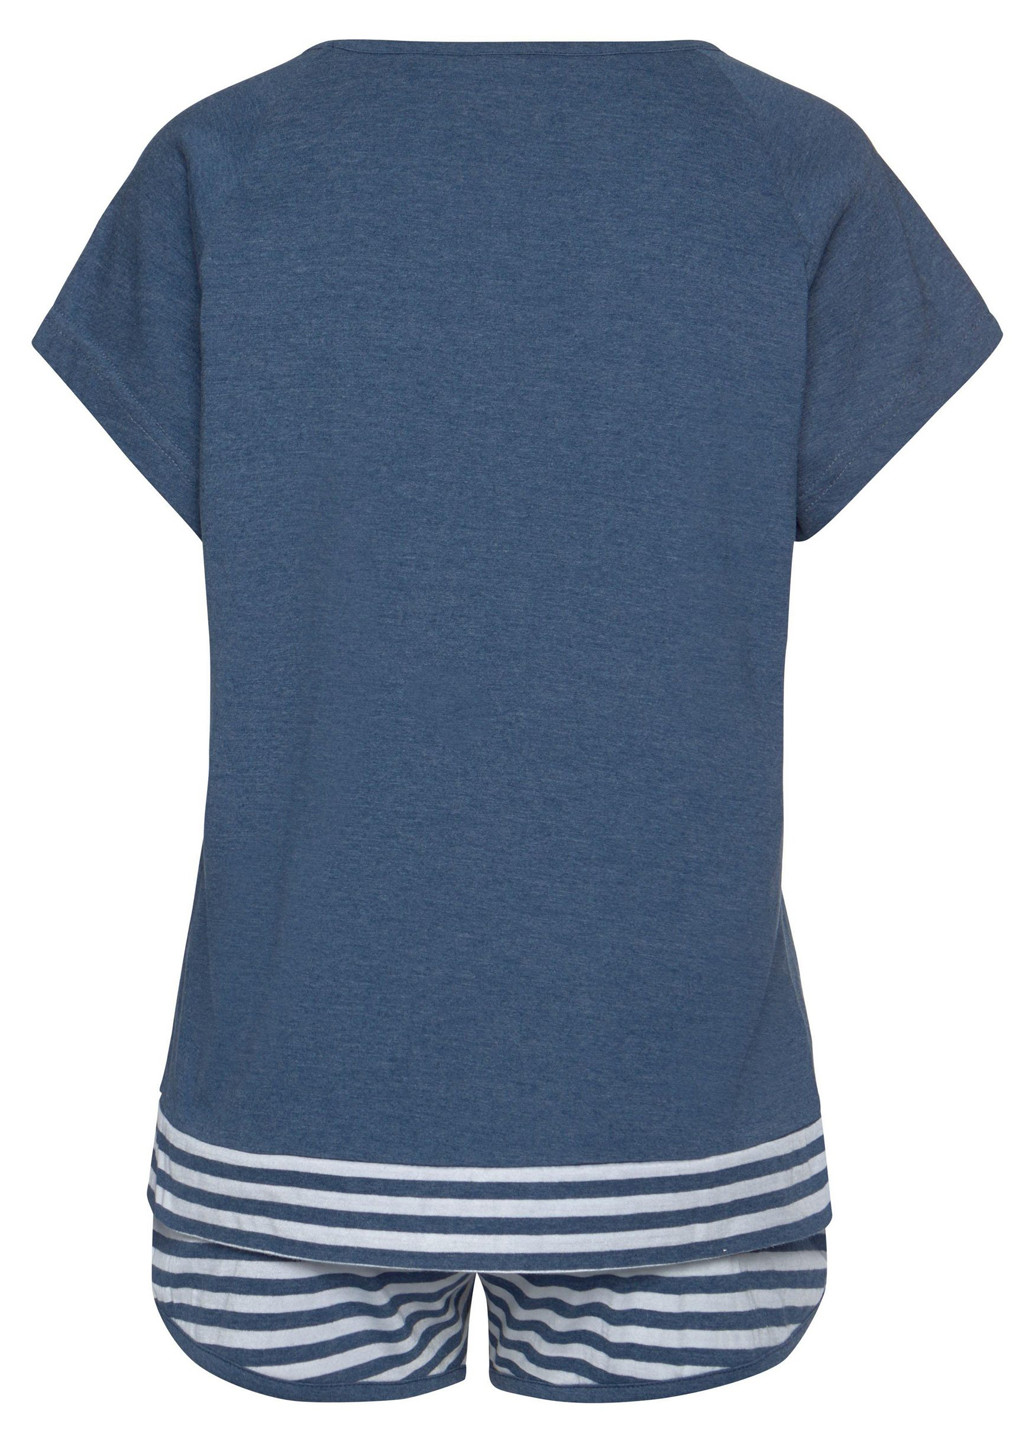 Синяя всесезон пижама (футболка, шорты) футболка + шорты Arizona